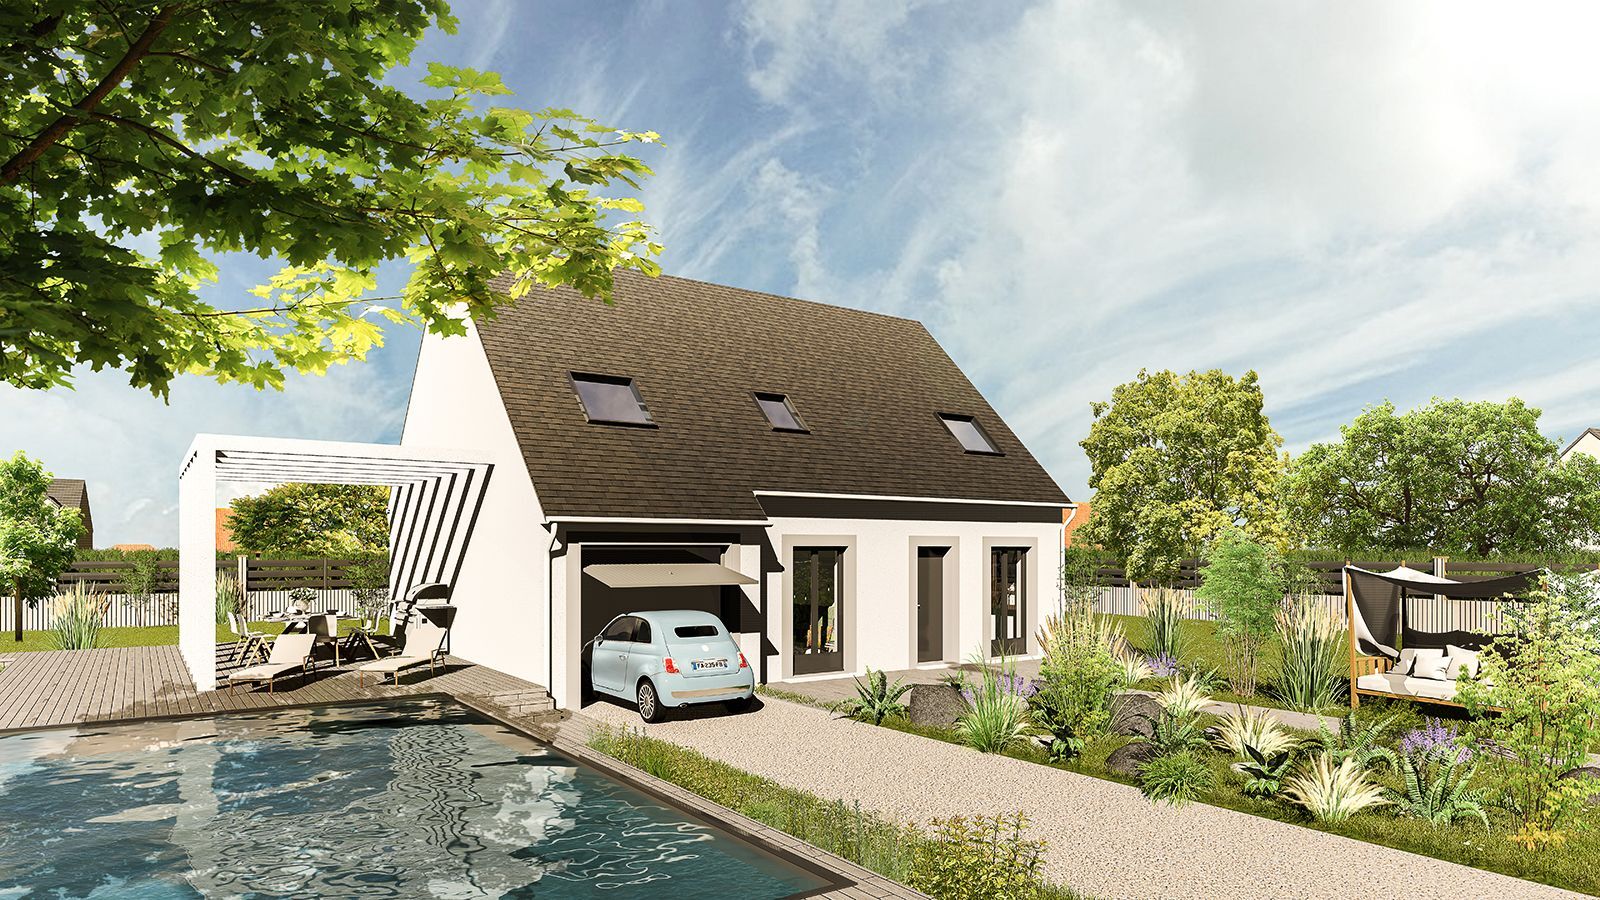 Vente Maison neuve 112 m² à Fontaine-la-Guyon 256 939 €